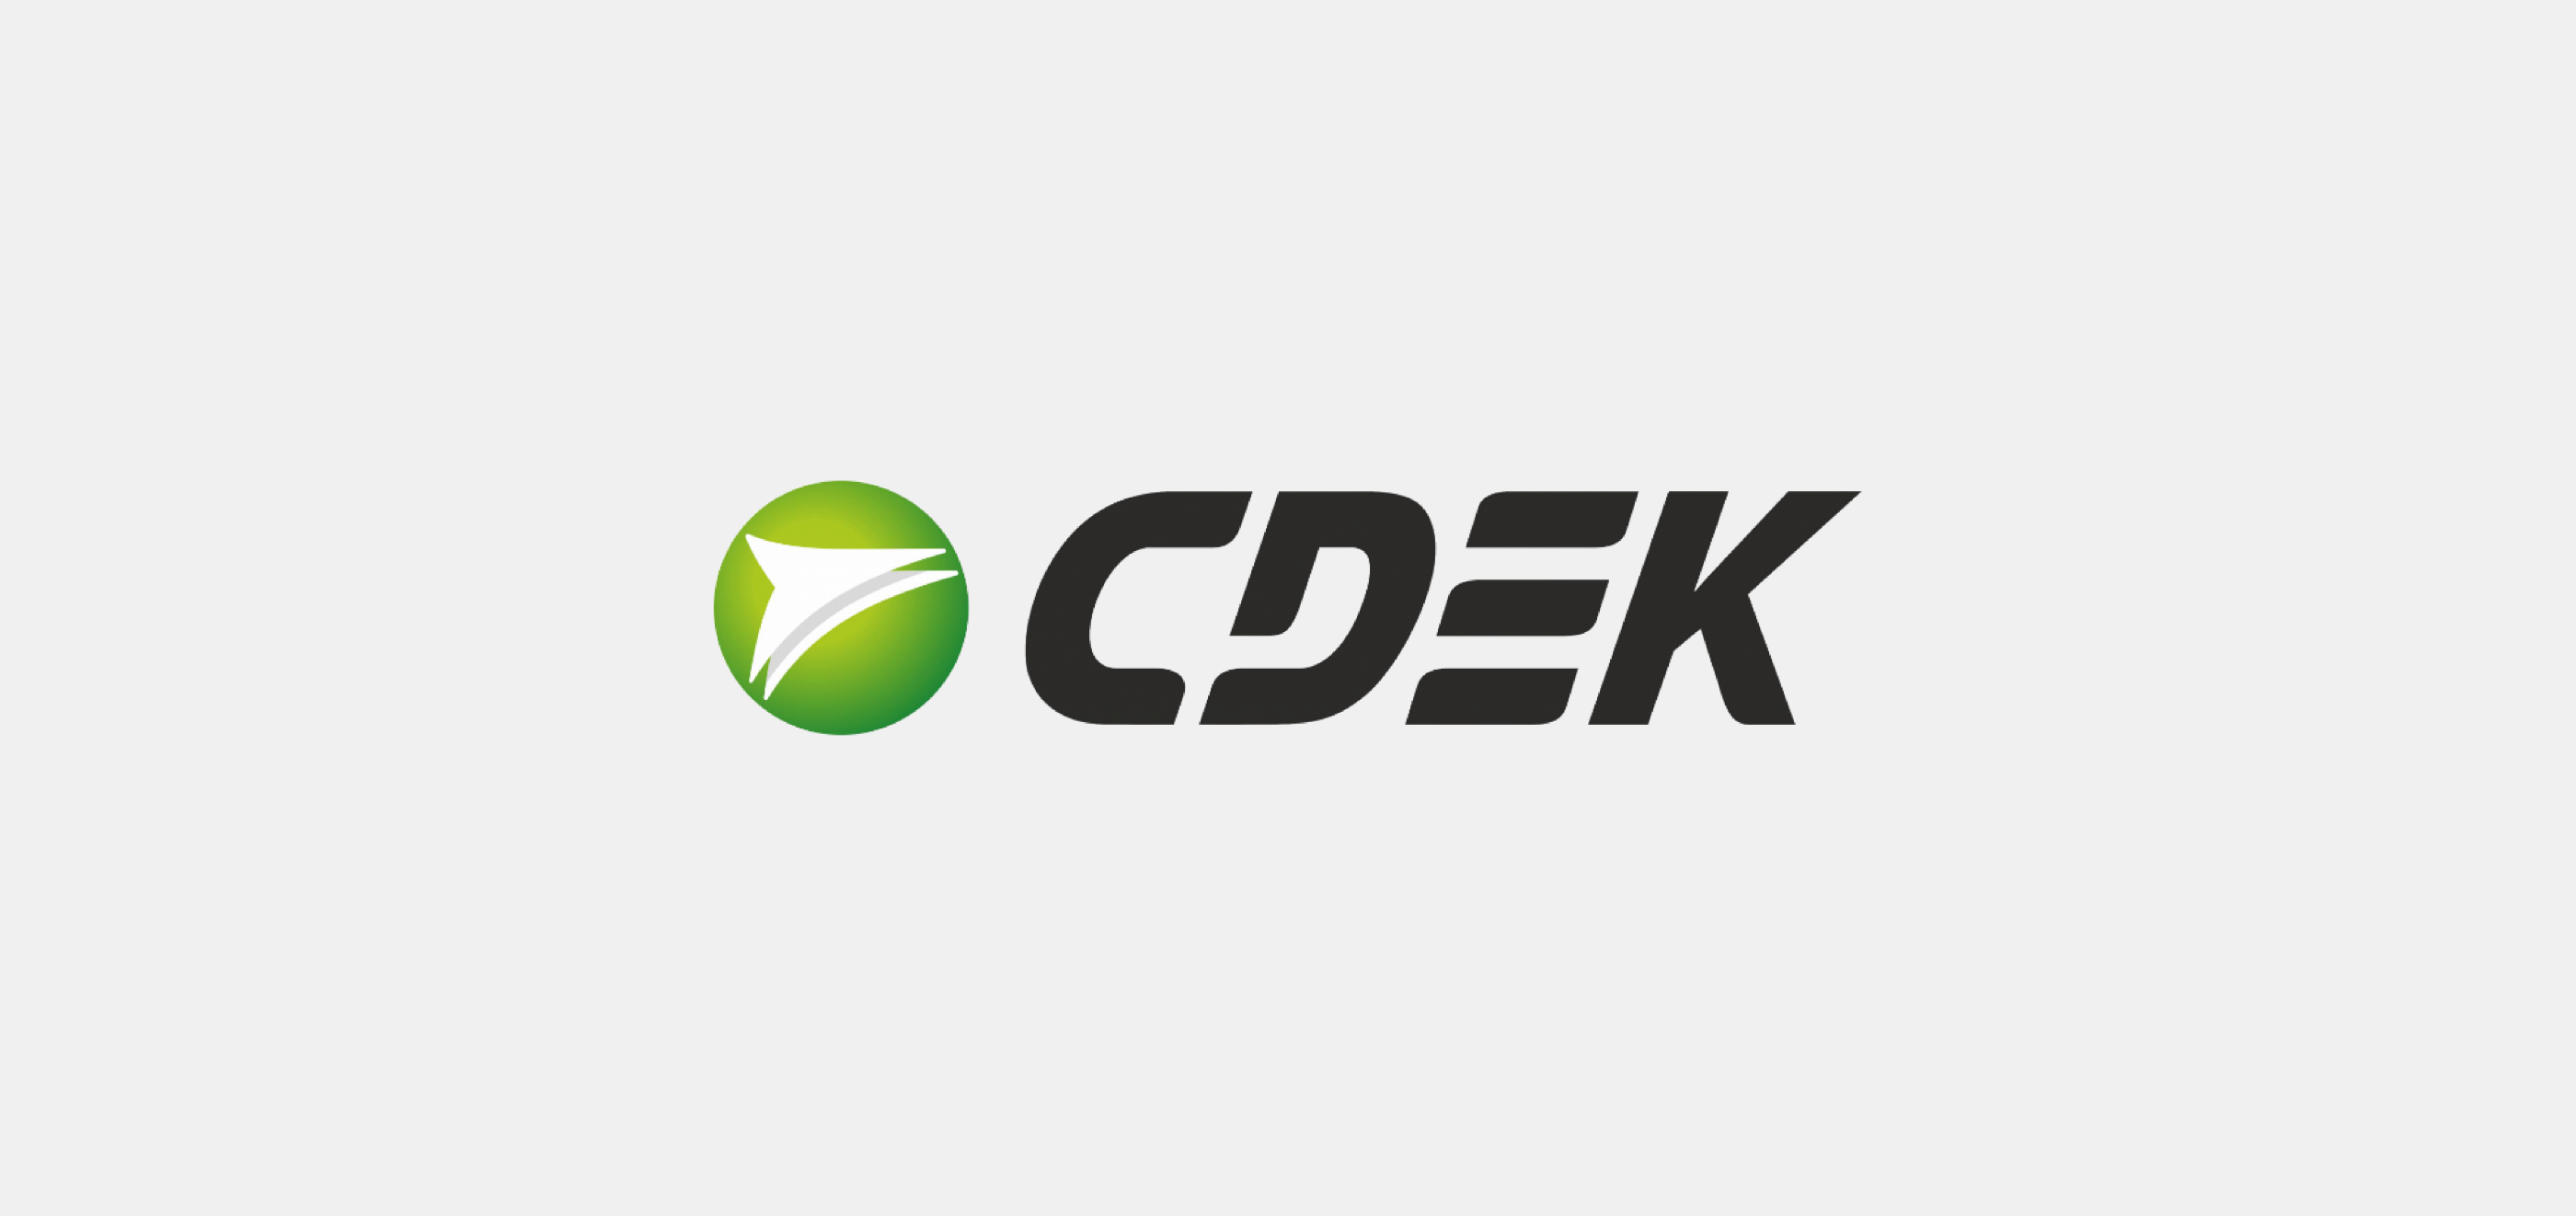 СДЭК. CDEK логотип. Транспортная компания СДЭК. СДЭК логистические решения логотип.